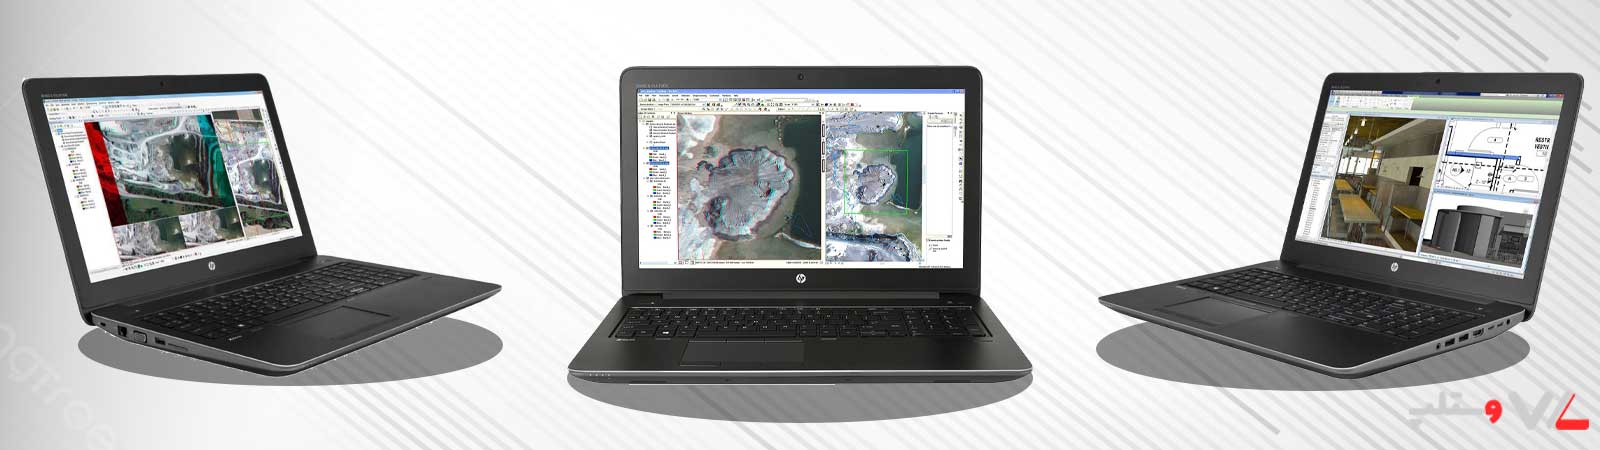 لپ تاپ HP Zbook 15 G3